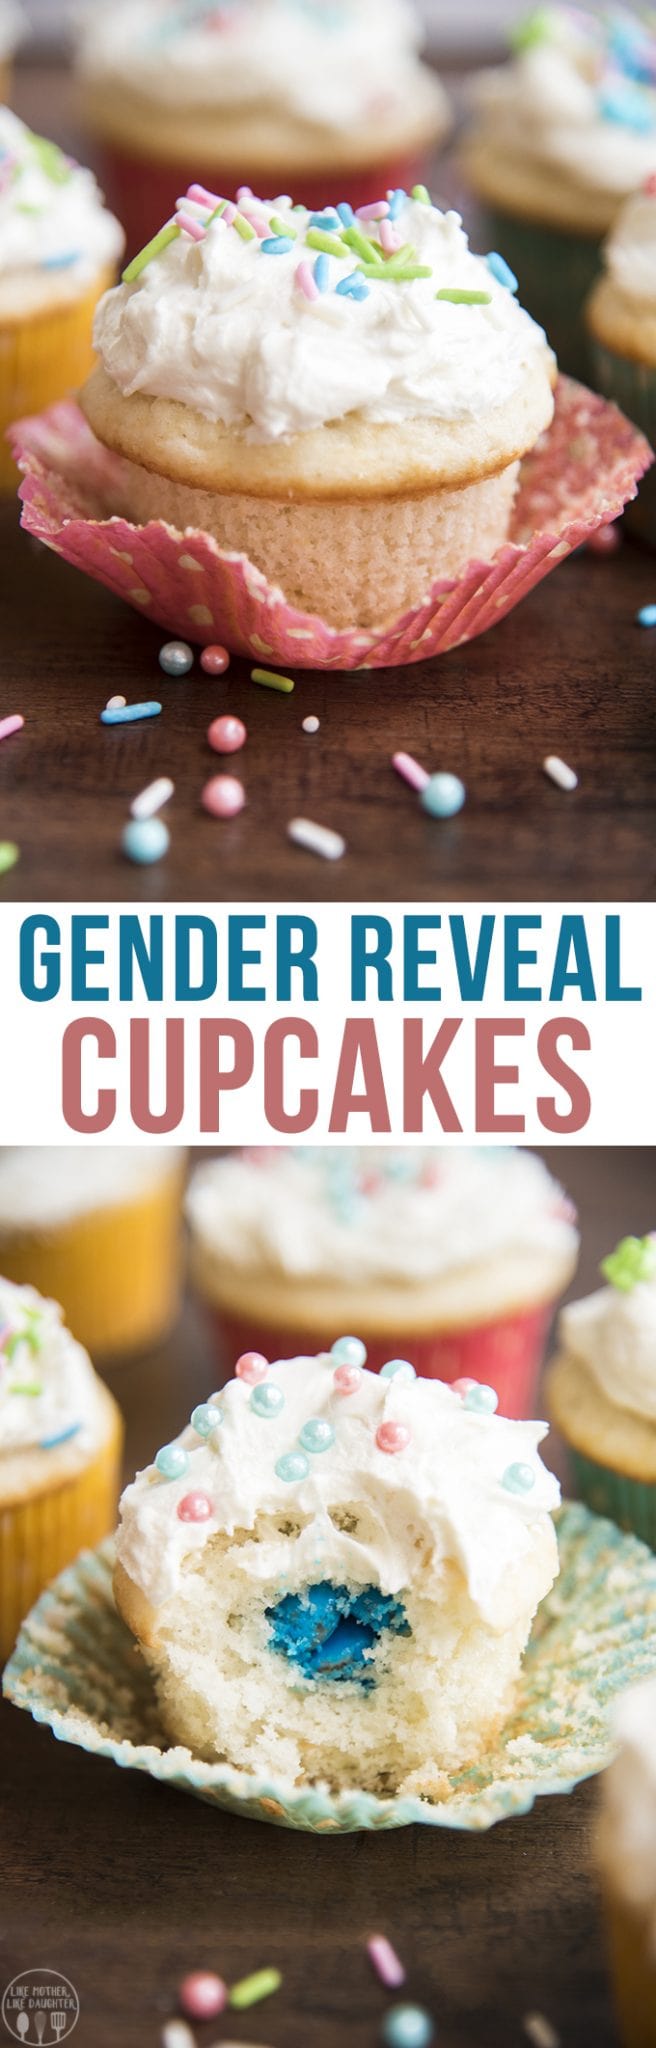 Gender reveal cupcakes header text displayed.